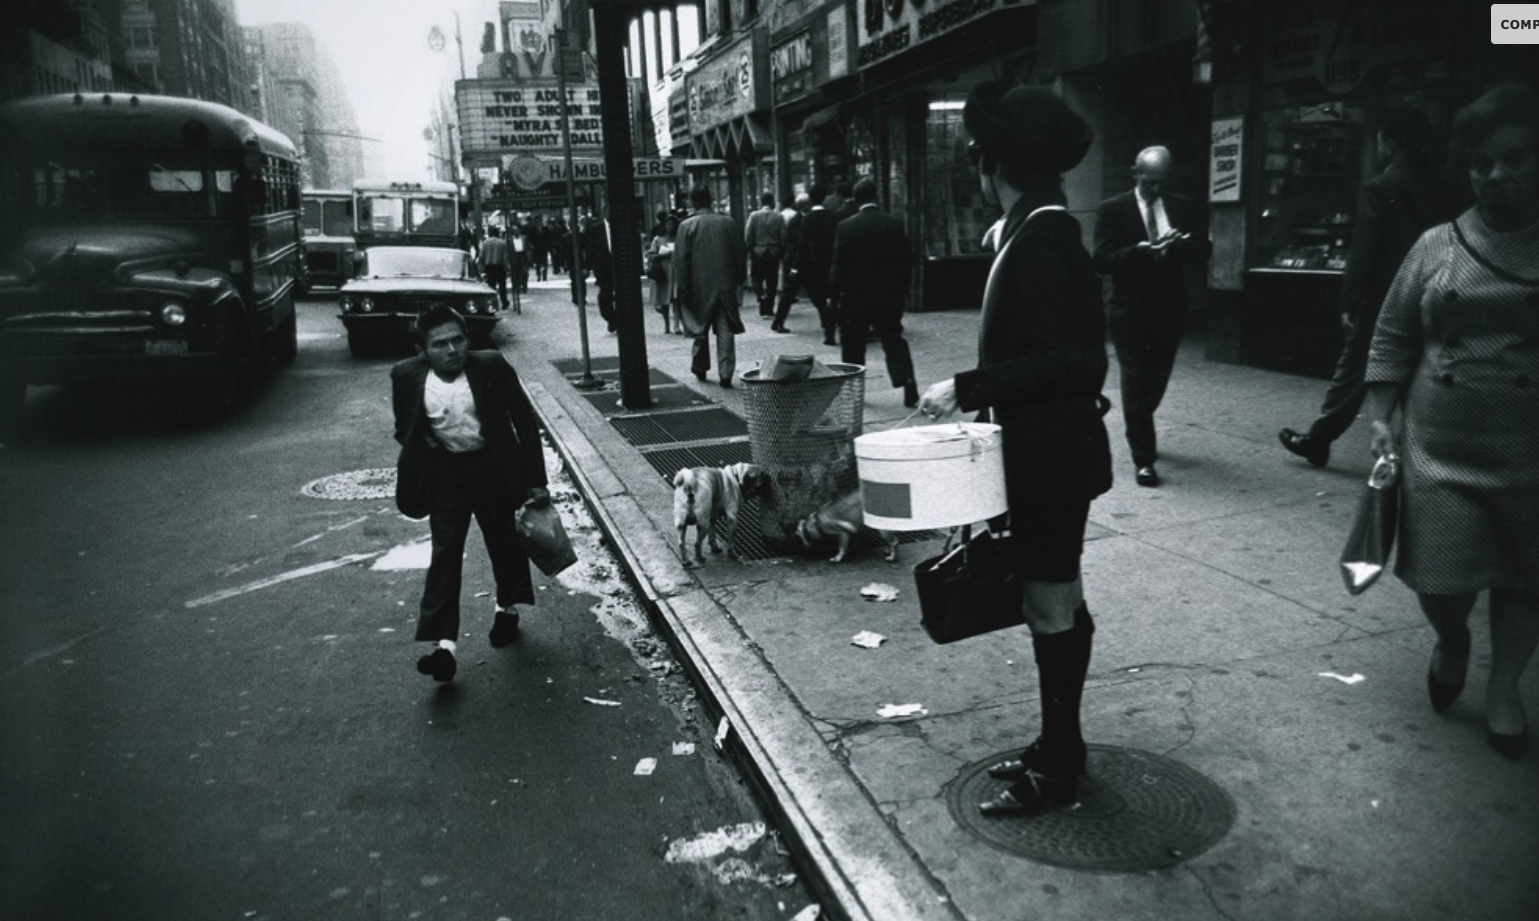 Garry Winogrand – New York City, 1968